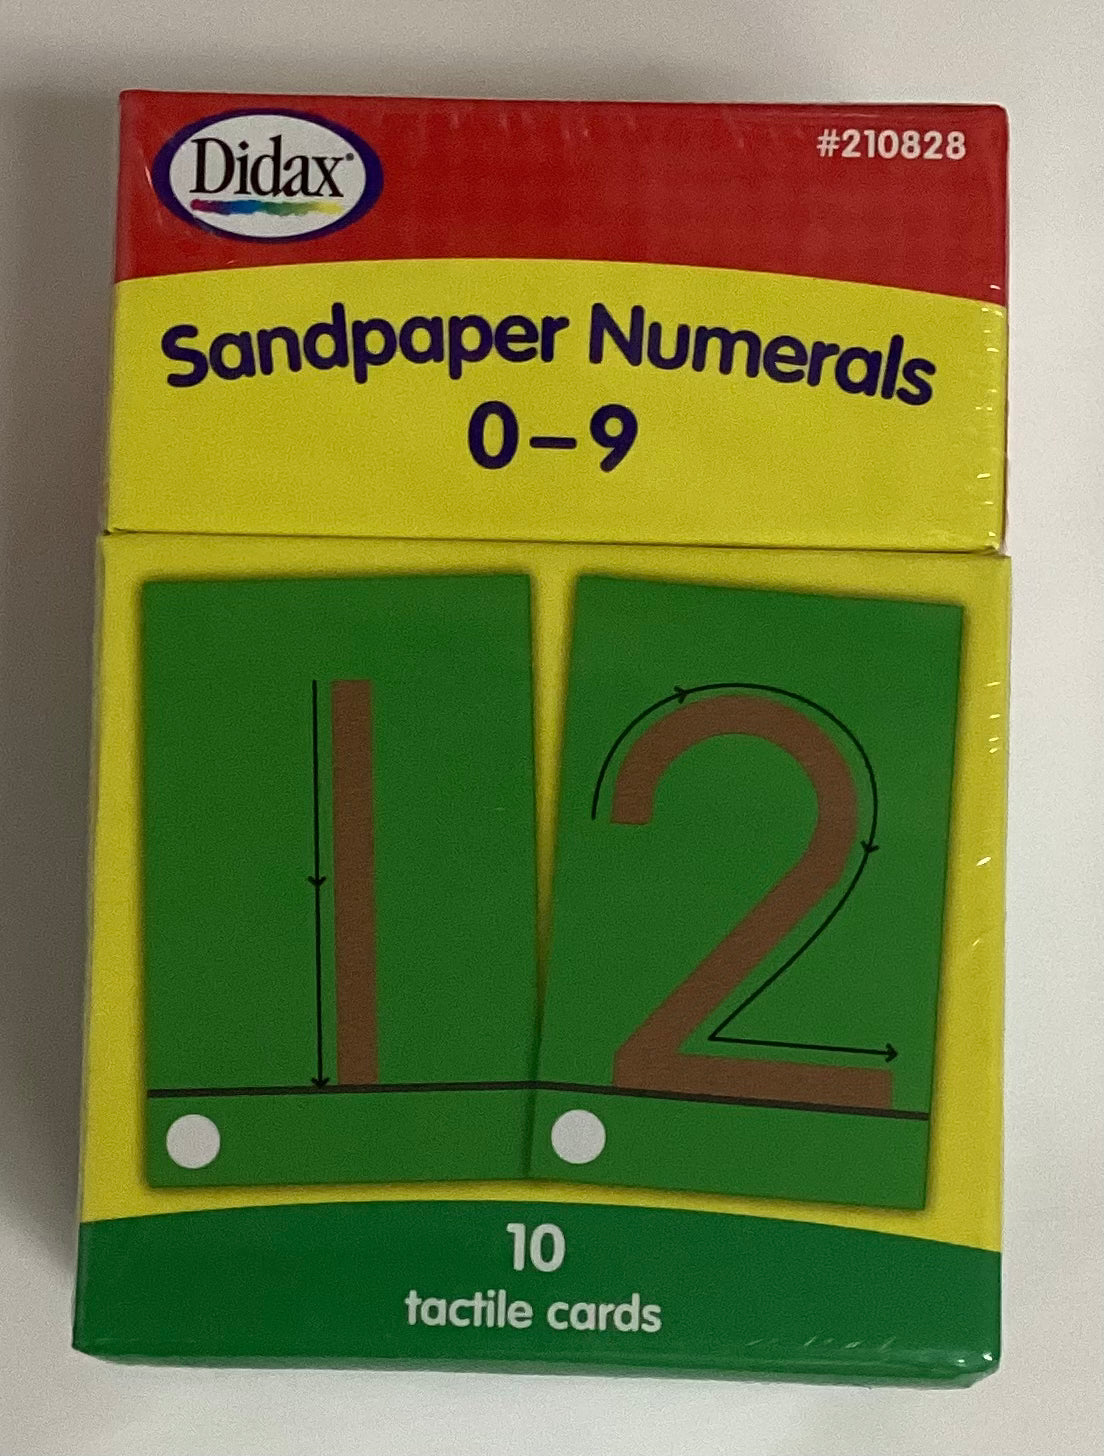 Sandpaper Numerals 0-9